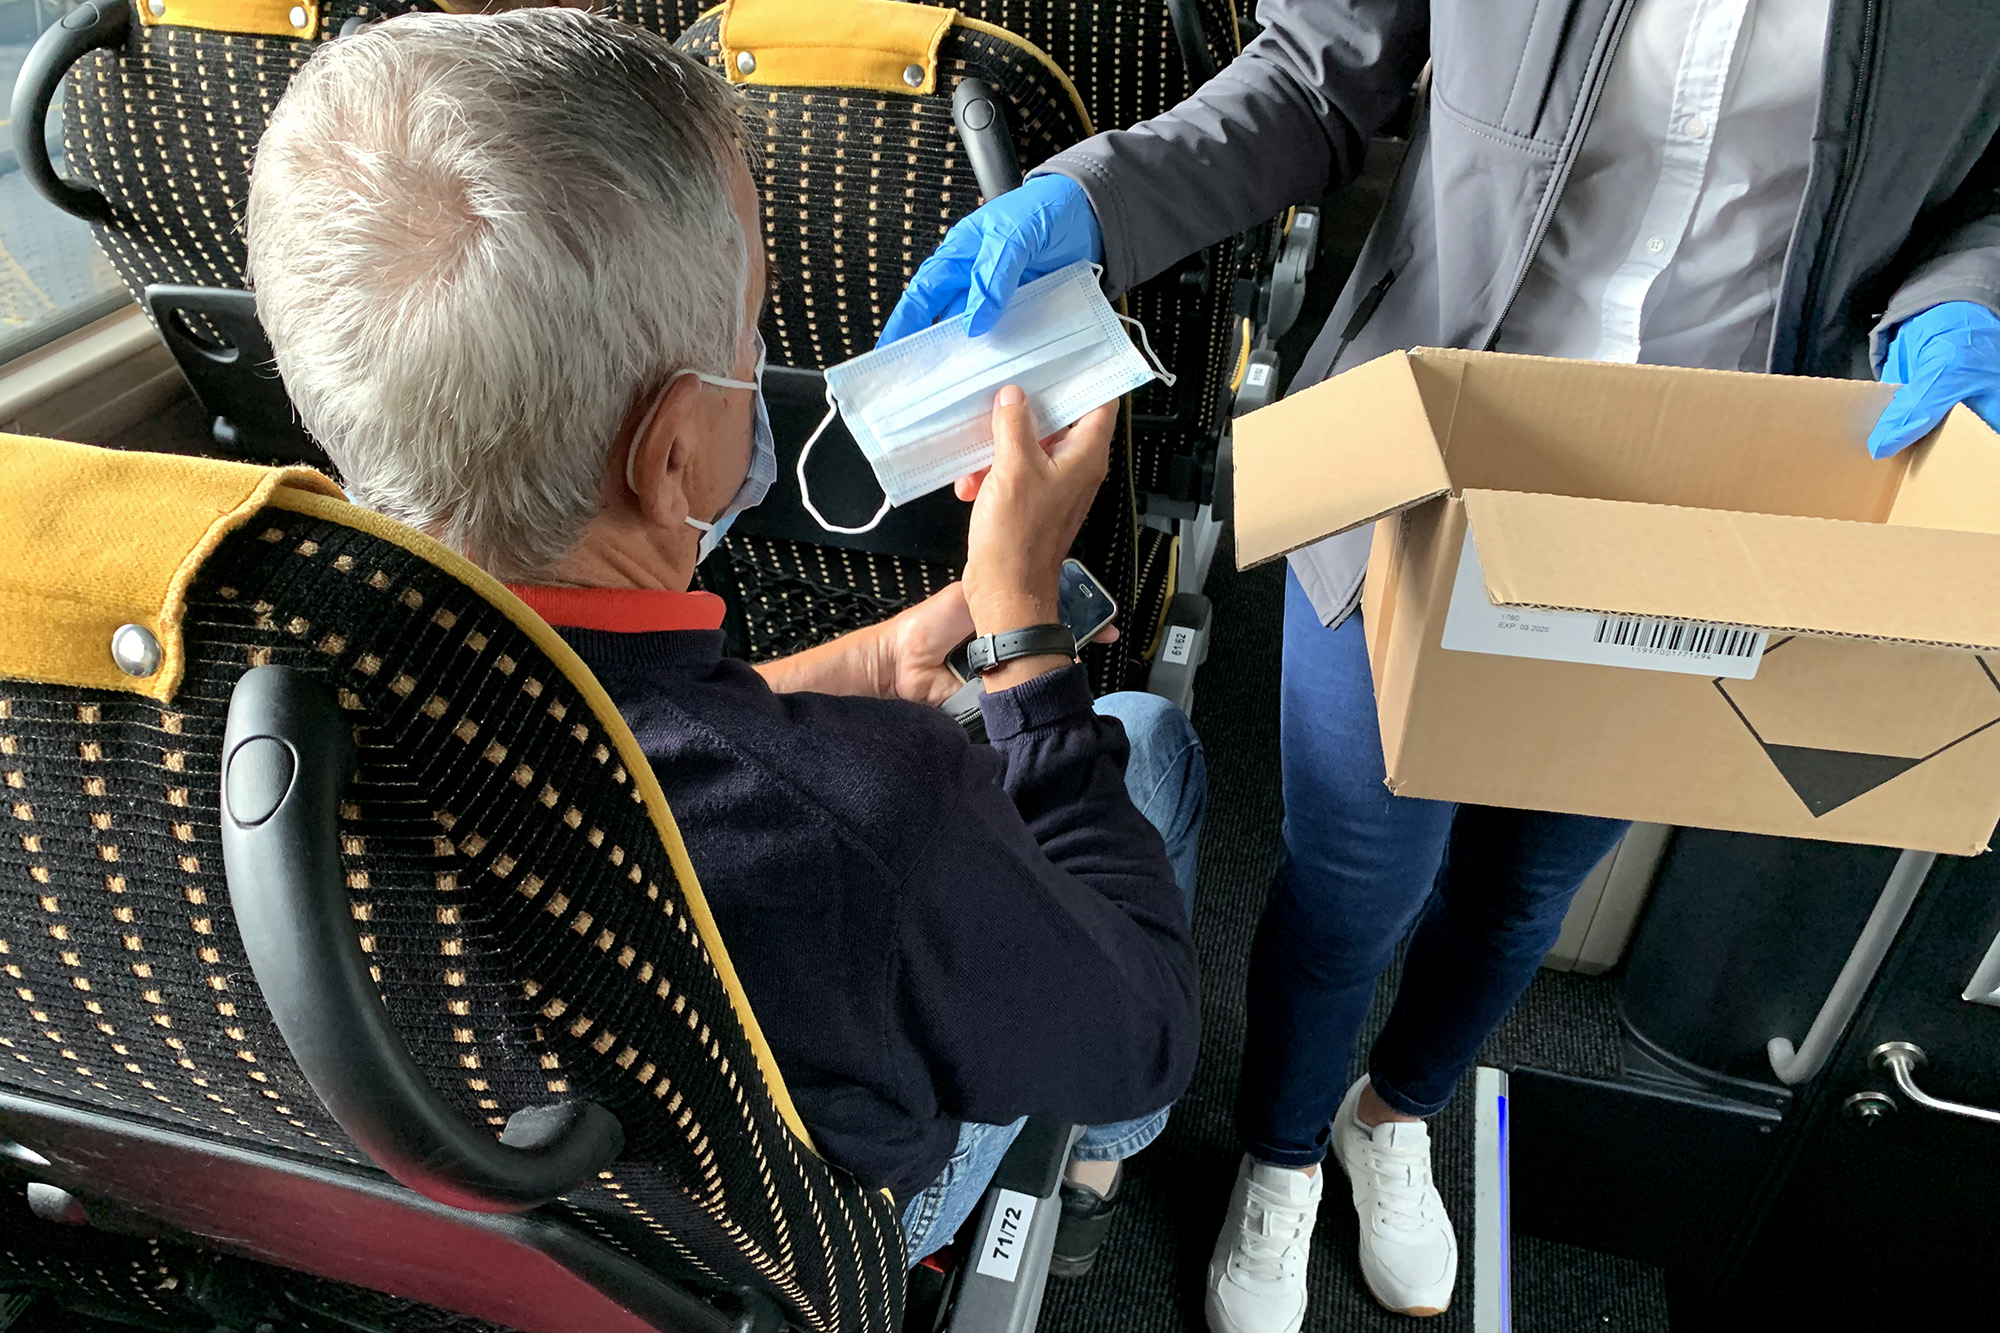 A képen a volánbusz dolgozója egy maszkot ad át egy utasnak a fedélzeten.